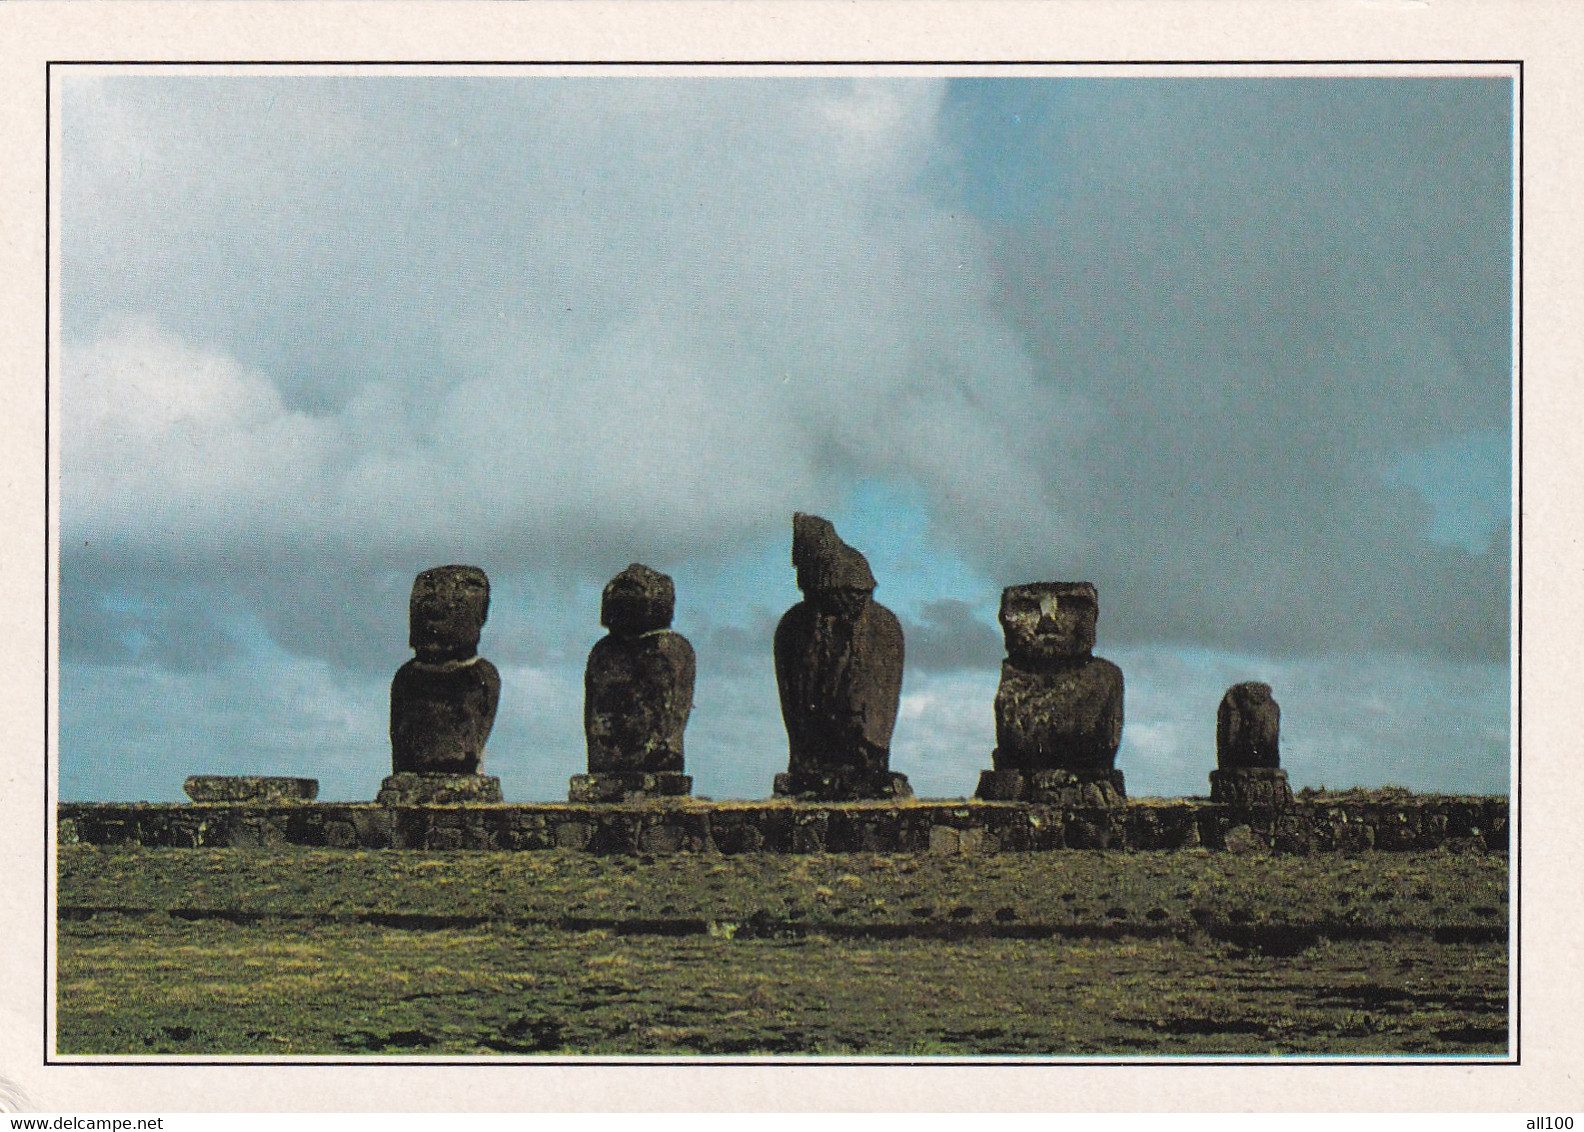 A20395 - TAHAI LES MOAI ILE DE PAQUES EASTER ISLAND RAPA NUI - Rapa Nui